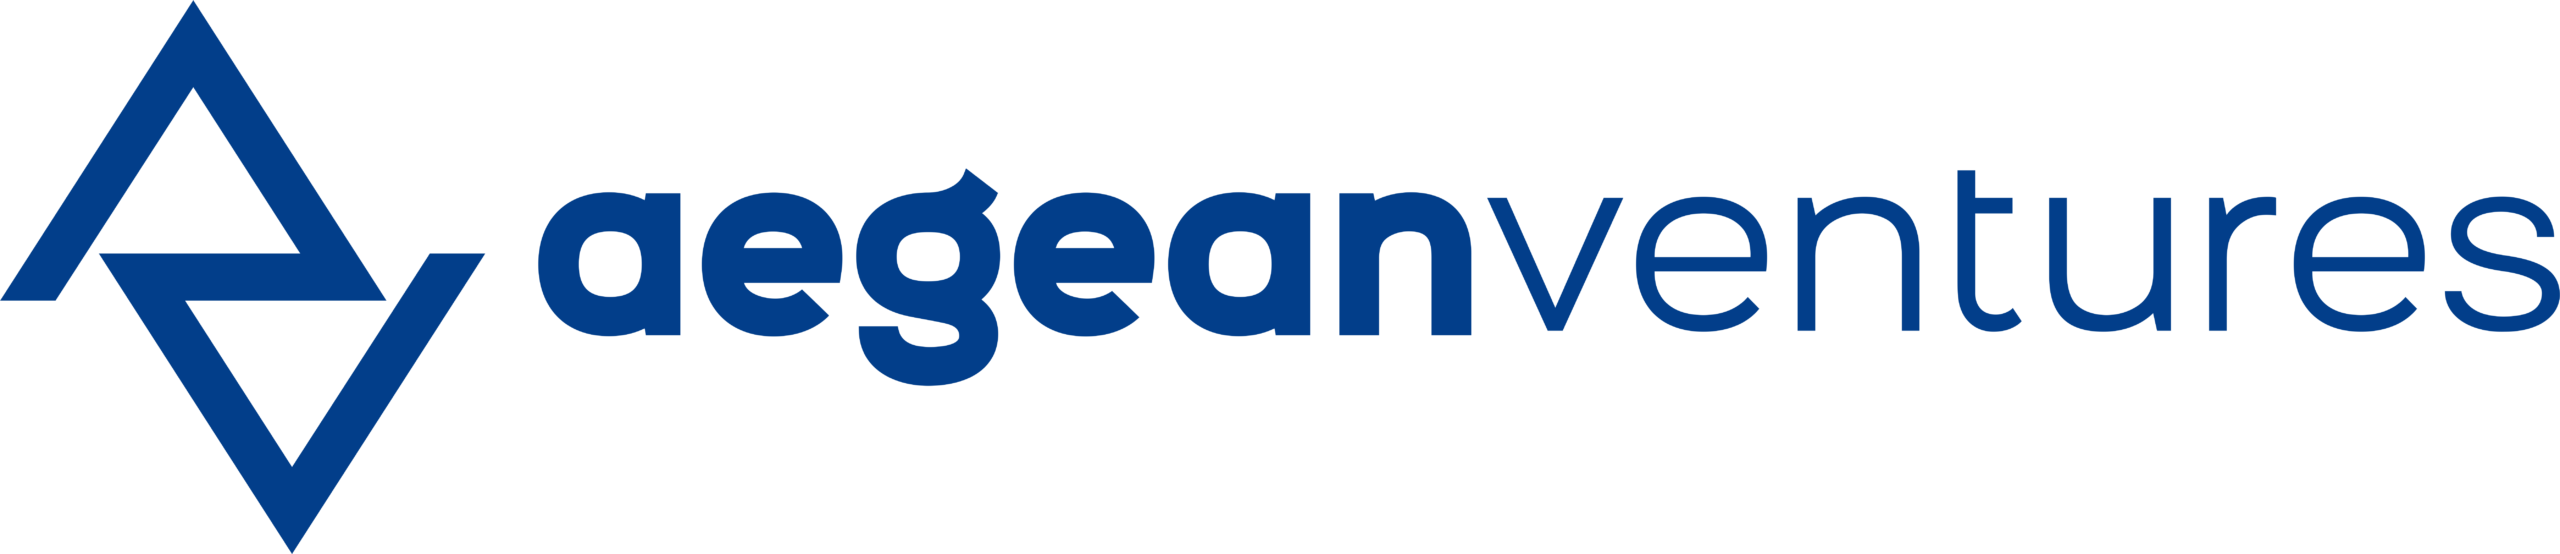 Aegean Ventures Logo 2